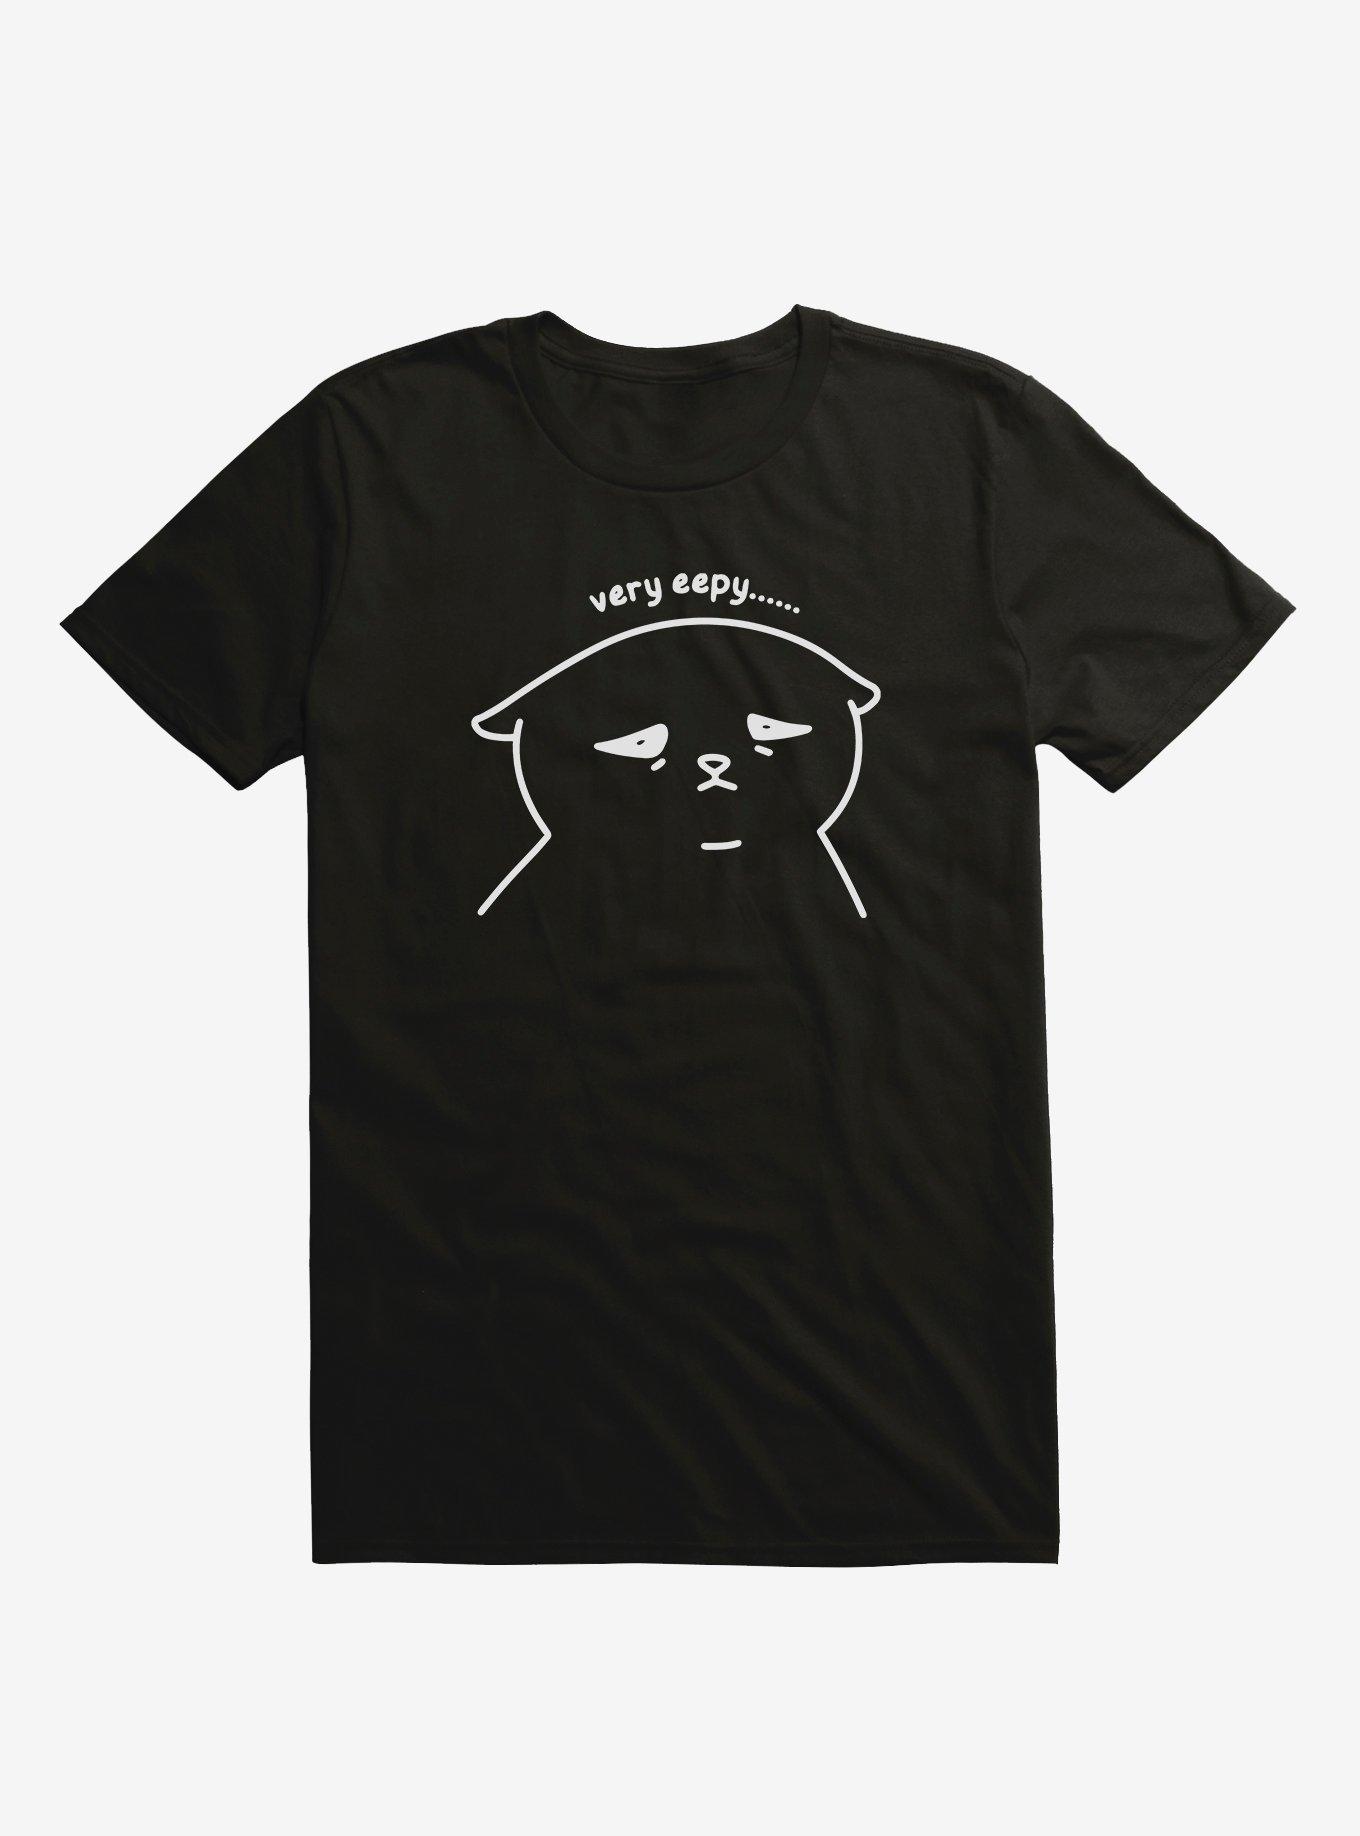 Very Eepy Cat T-Shirt By Heloisa, BLACK, hi-res